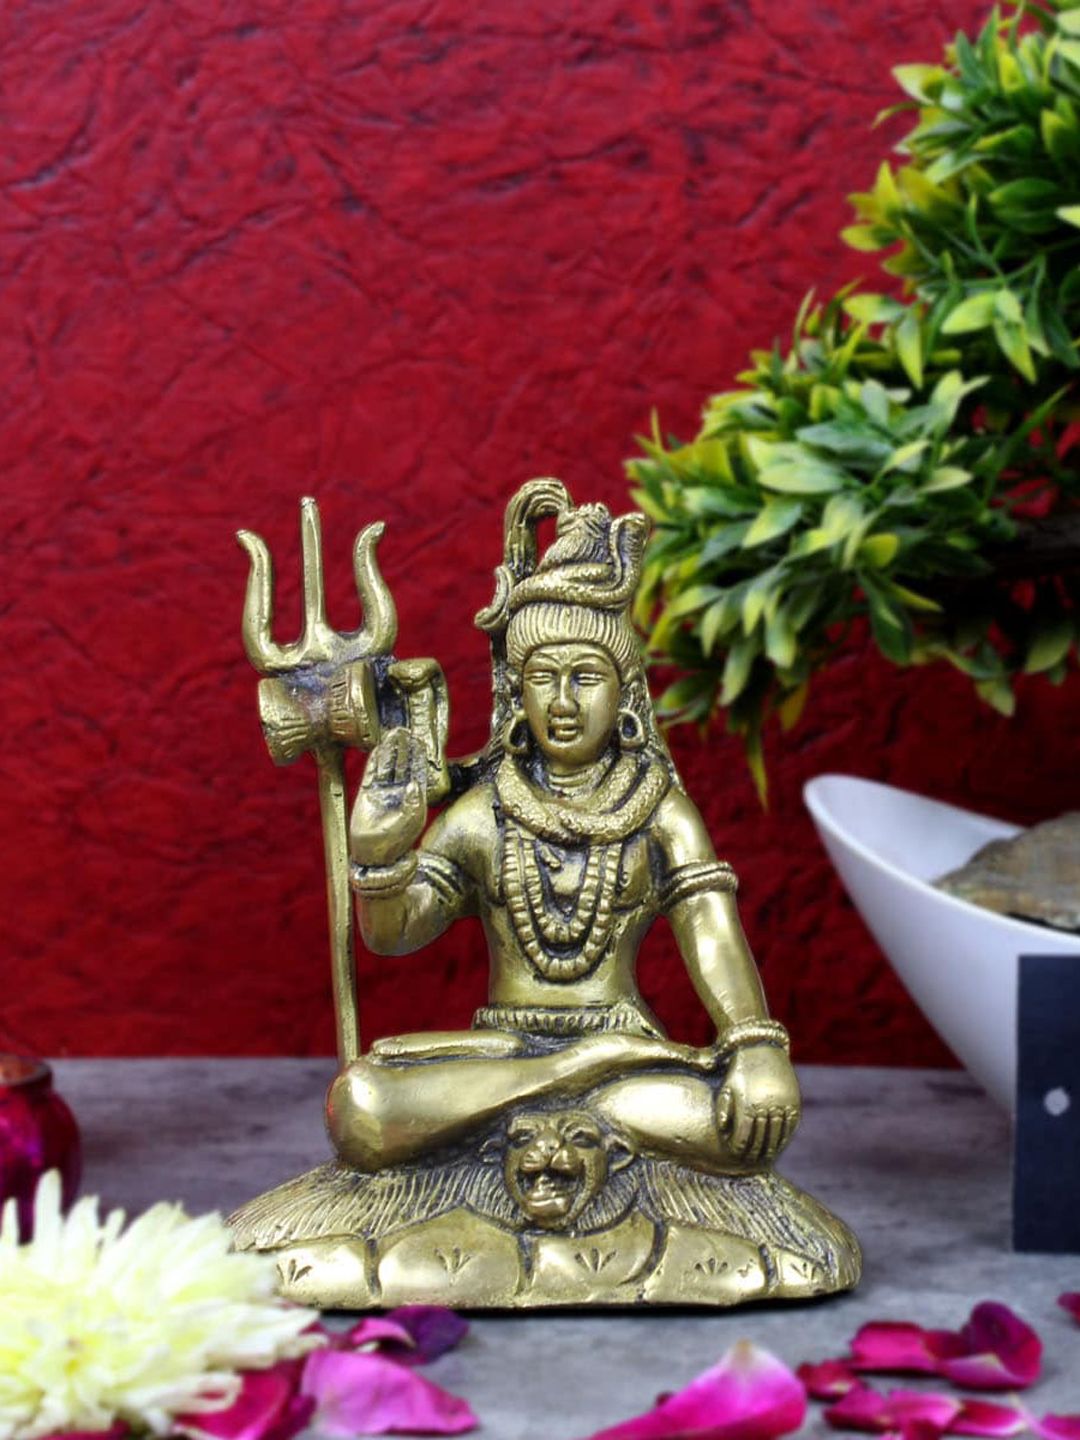 StatueStudio Gold-Toned Lord Shiva Showpiece Price in India